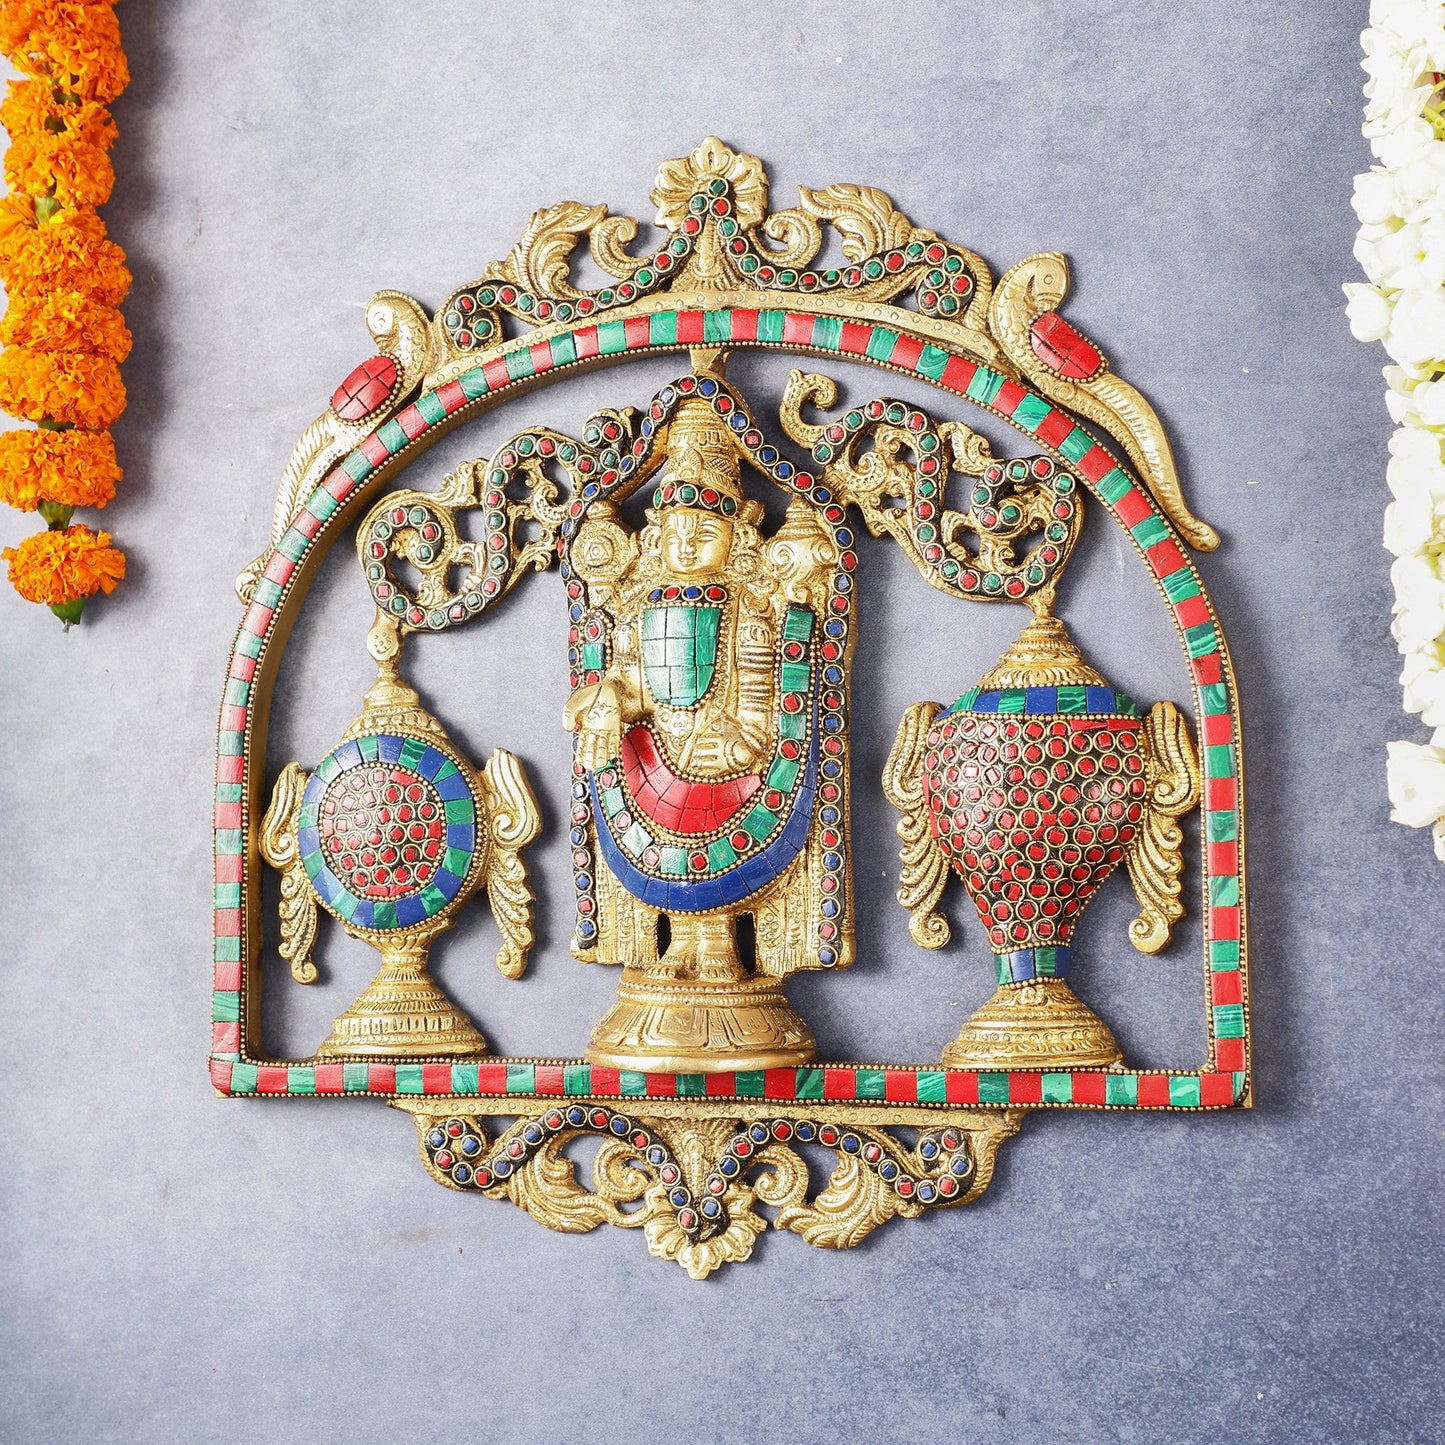 Brass Tirupati Balaji wall hanging with Shankh and Chakra 12 " stonework - Budhshiv.com